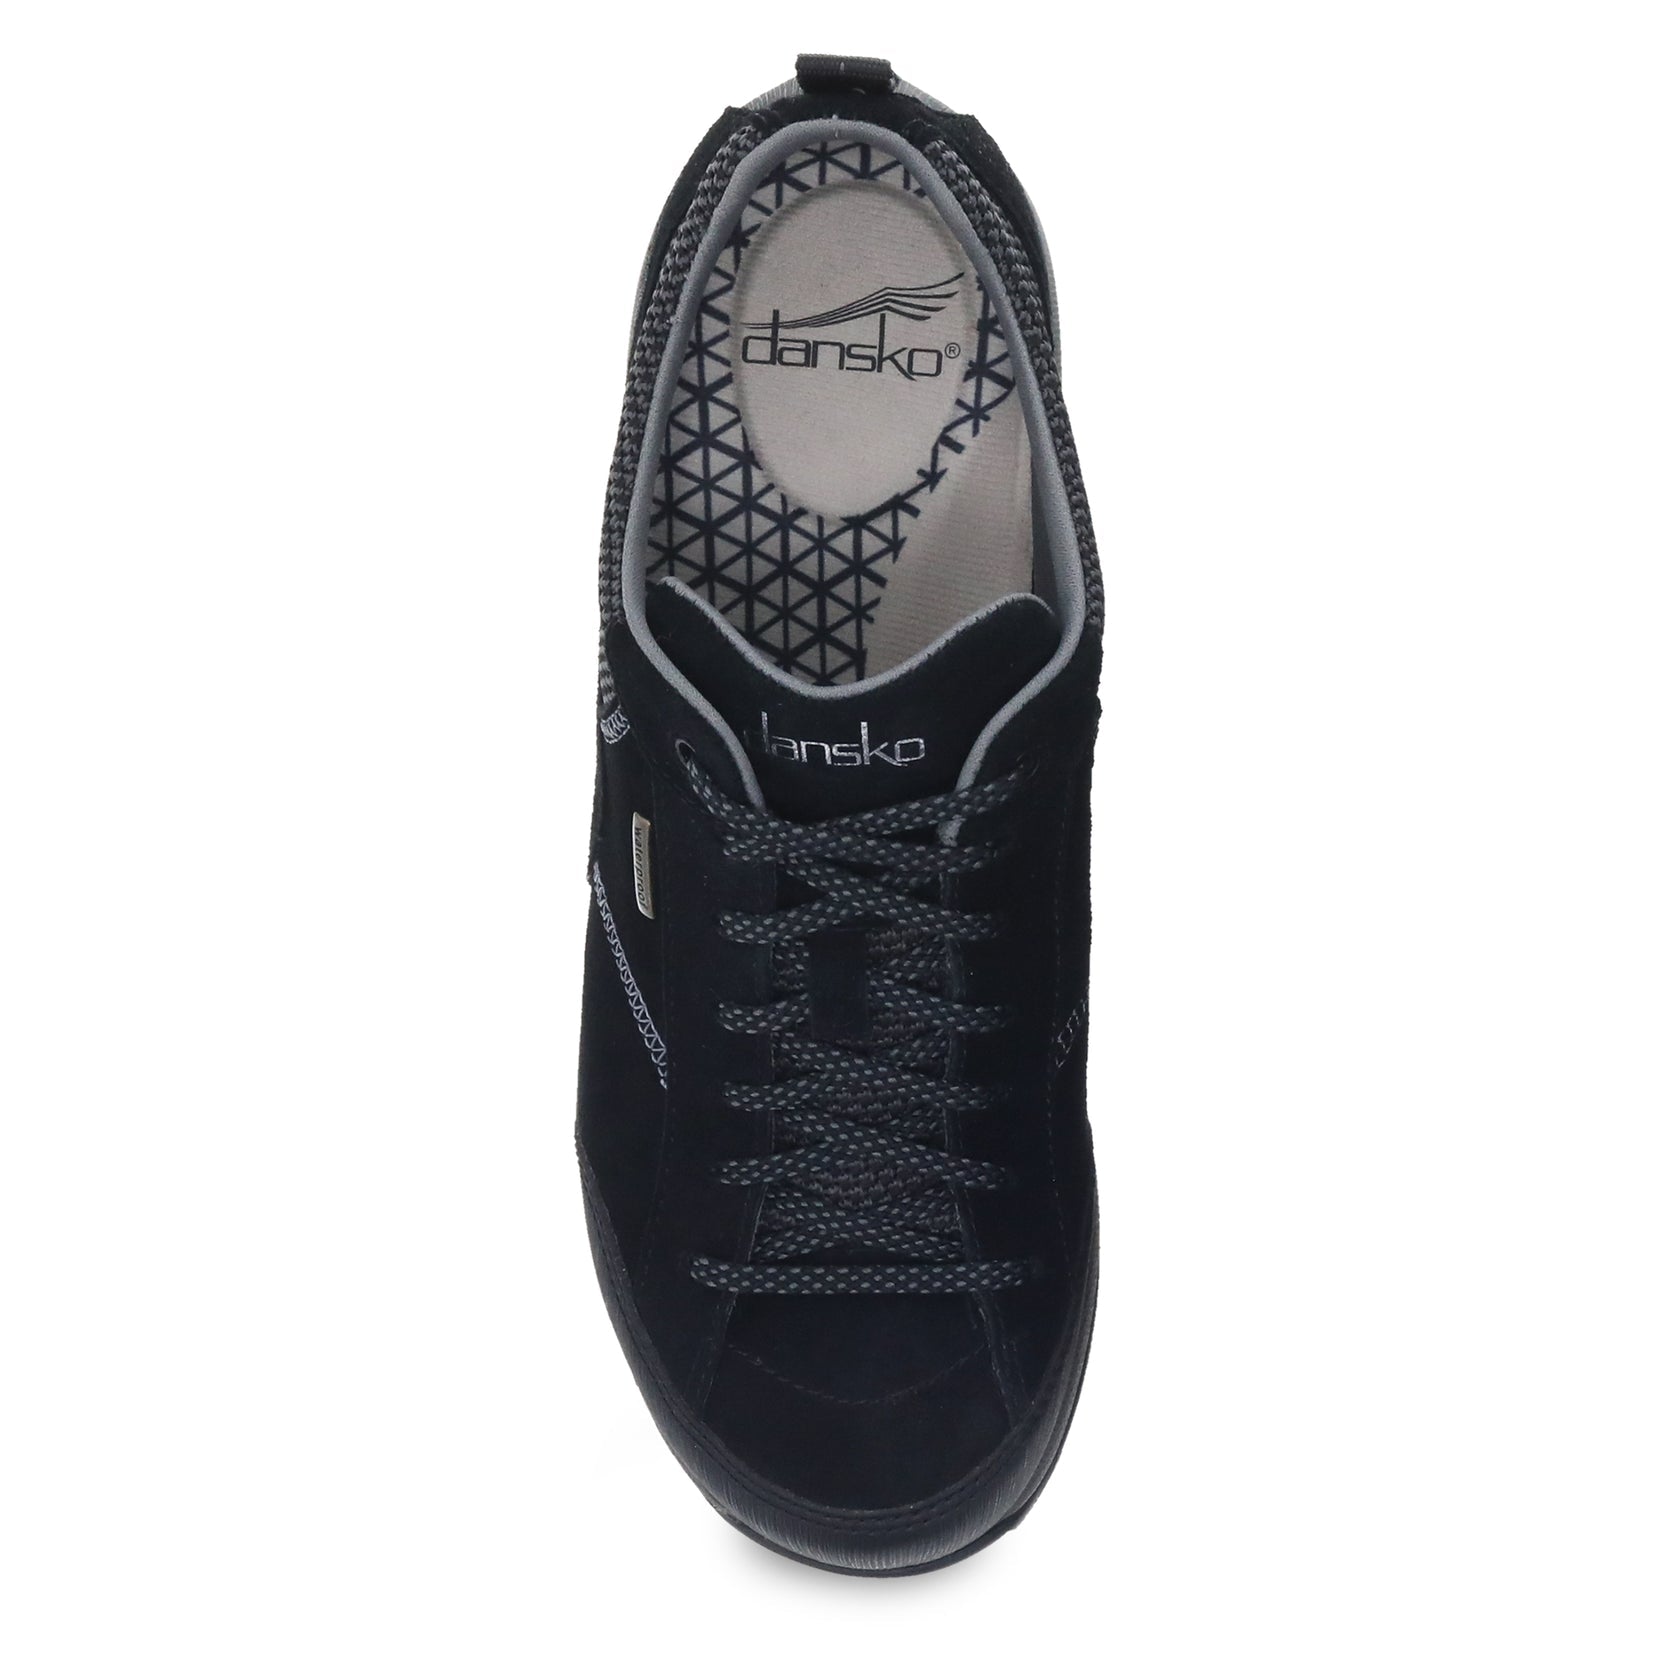 Dansko Women's Paisley Wide Sneakers Black/Black Suede